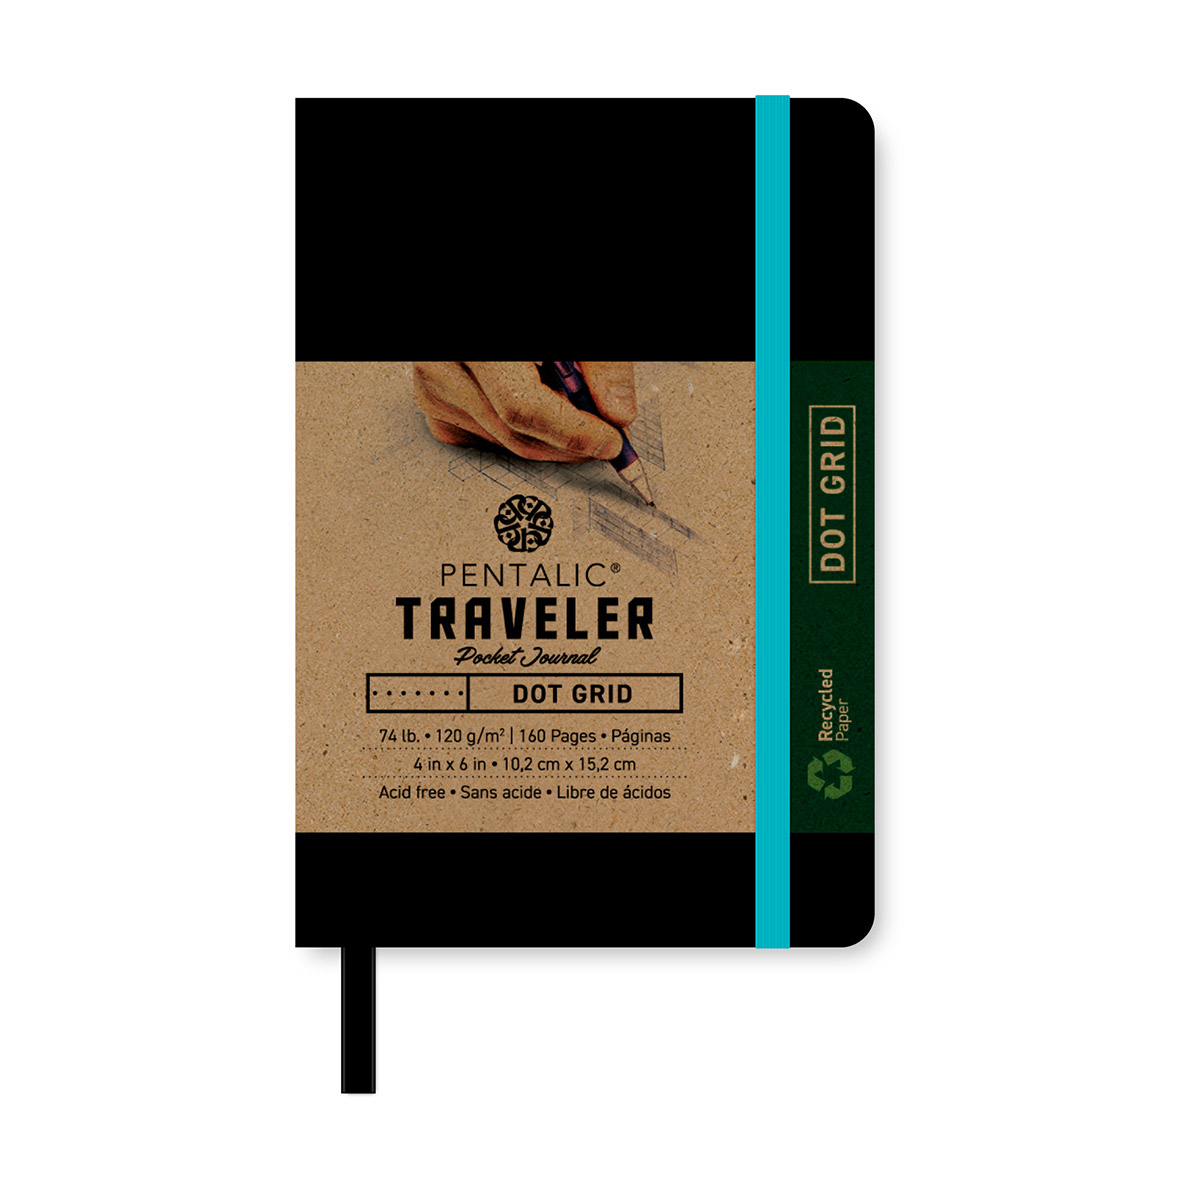 Traveler Pocket Journal – Pentalic